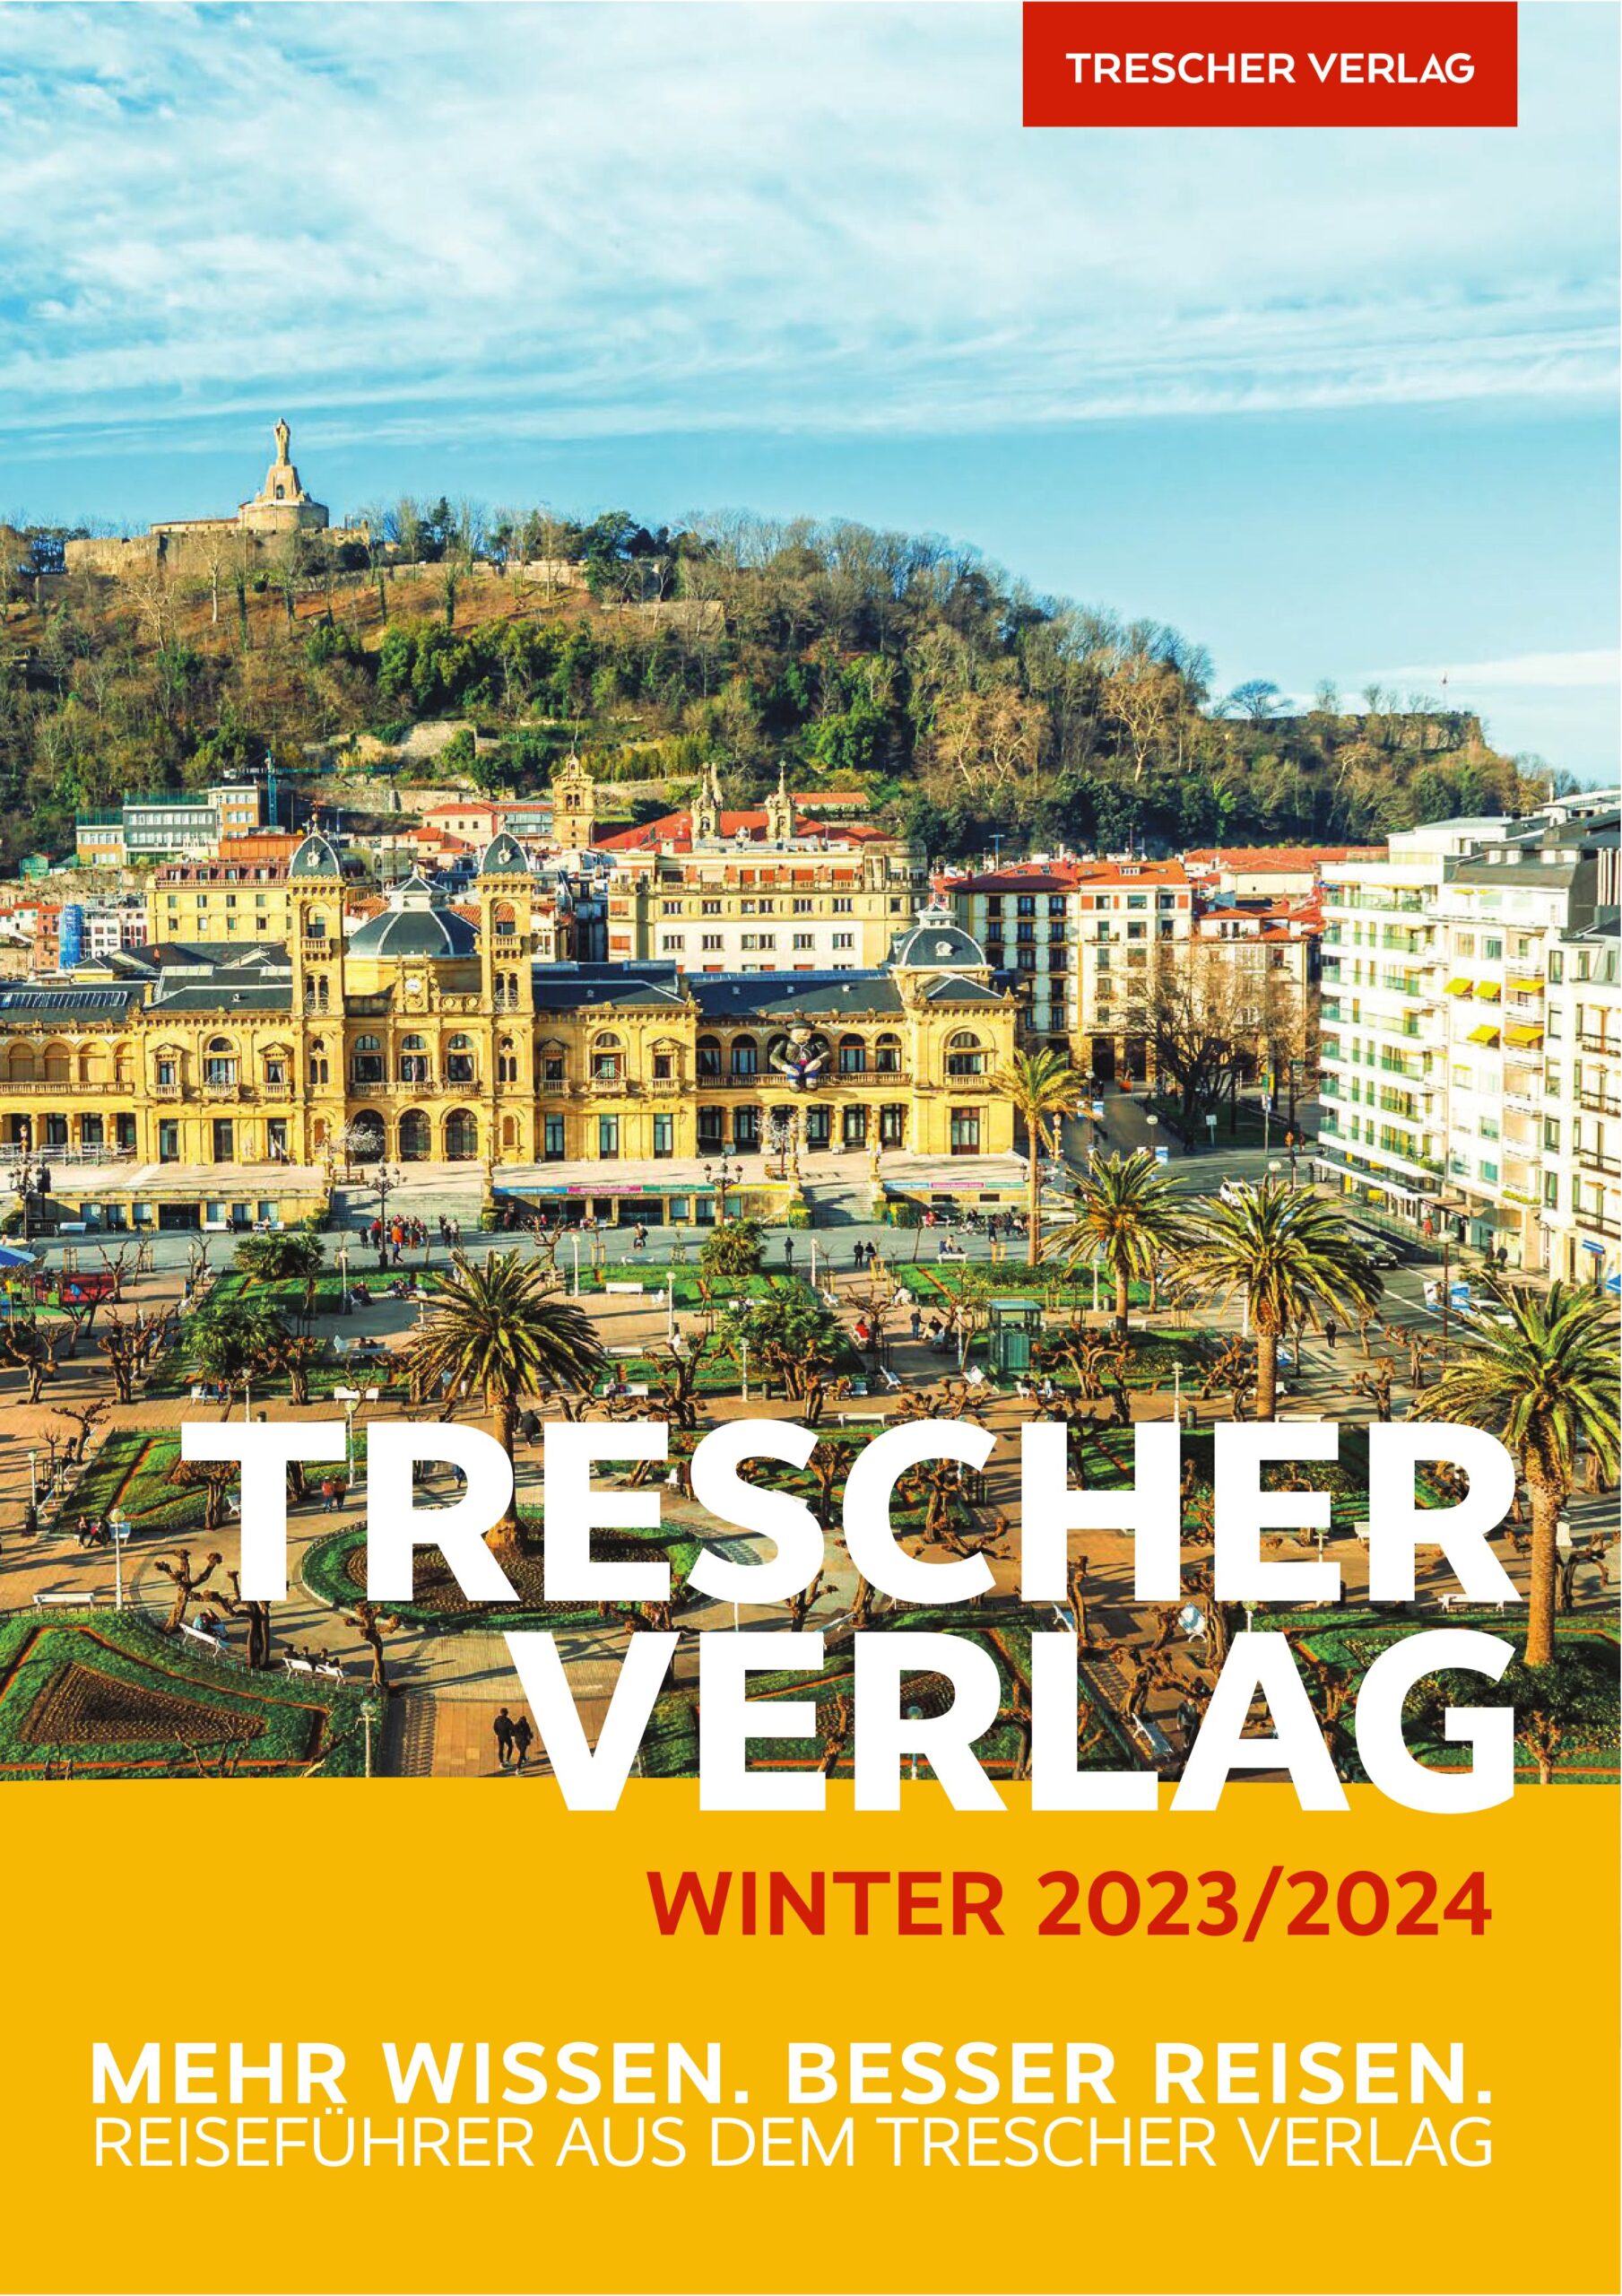 Trescher Verlag Vorschau Winter 2023 2024